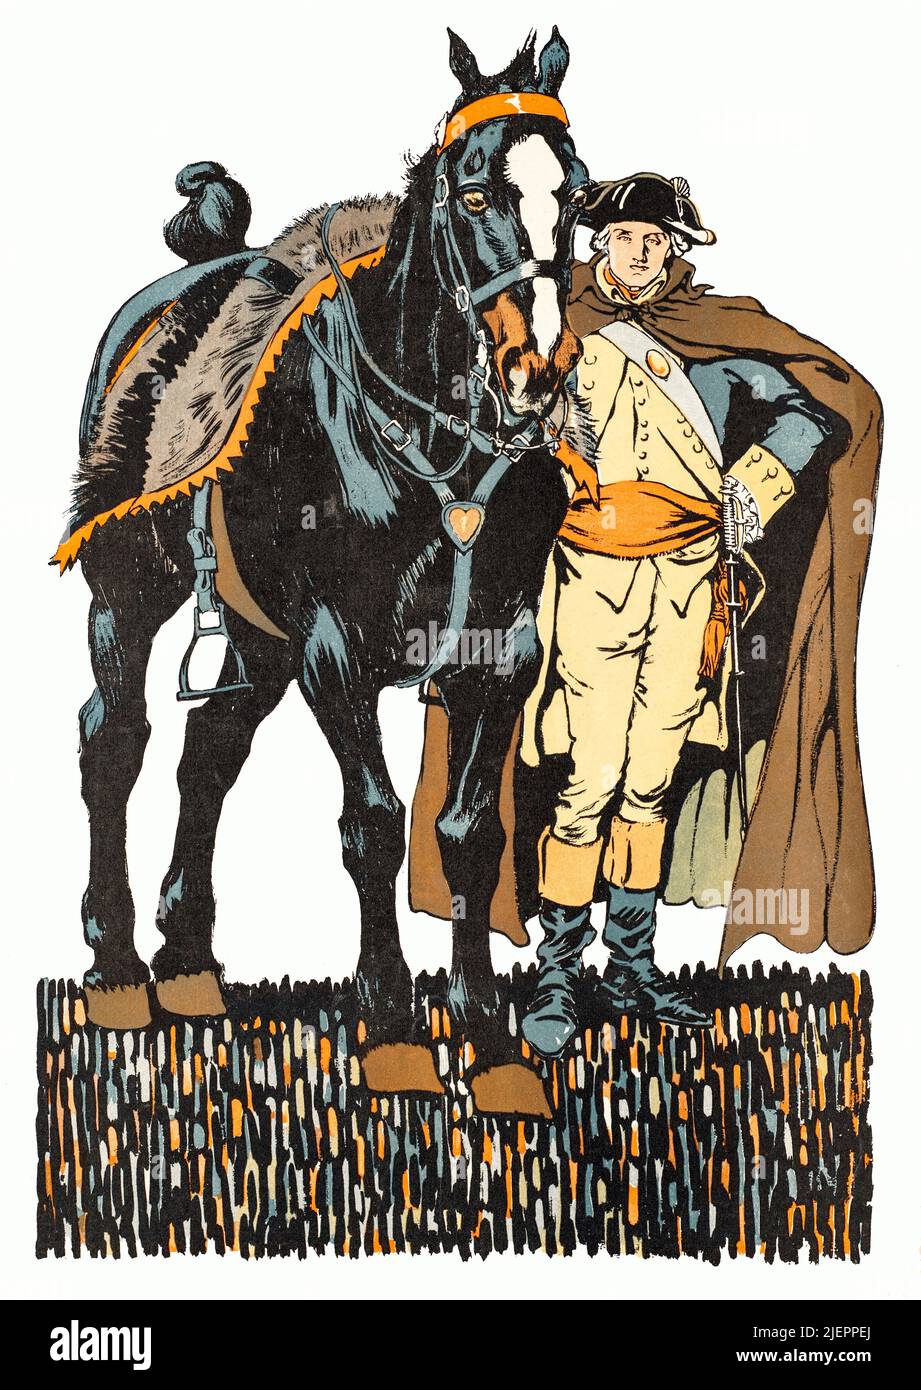 Eine Illustration des frühen 20.. Jahrhunderts von Edward Penfield (1866-1925) auf dem Cover von Collier's, einer amerikanischen Zeitschrift für Allgemeininteresse, in der George Washington (1732-1799) neben seinem Pferd steht. Von 1789 bis 1797 war er Militäroffizier, Staatsmann und Gründungsvater der Vereinigten Staaten von 1. Stockfoto